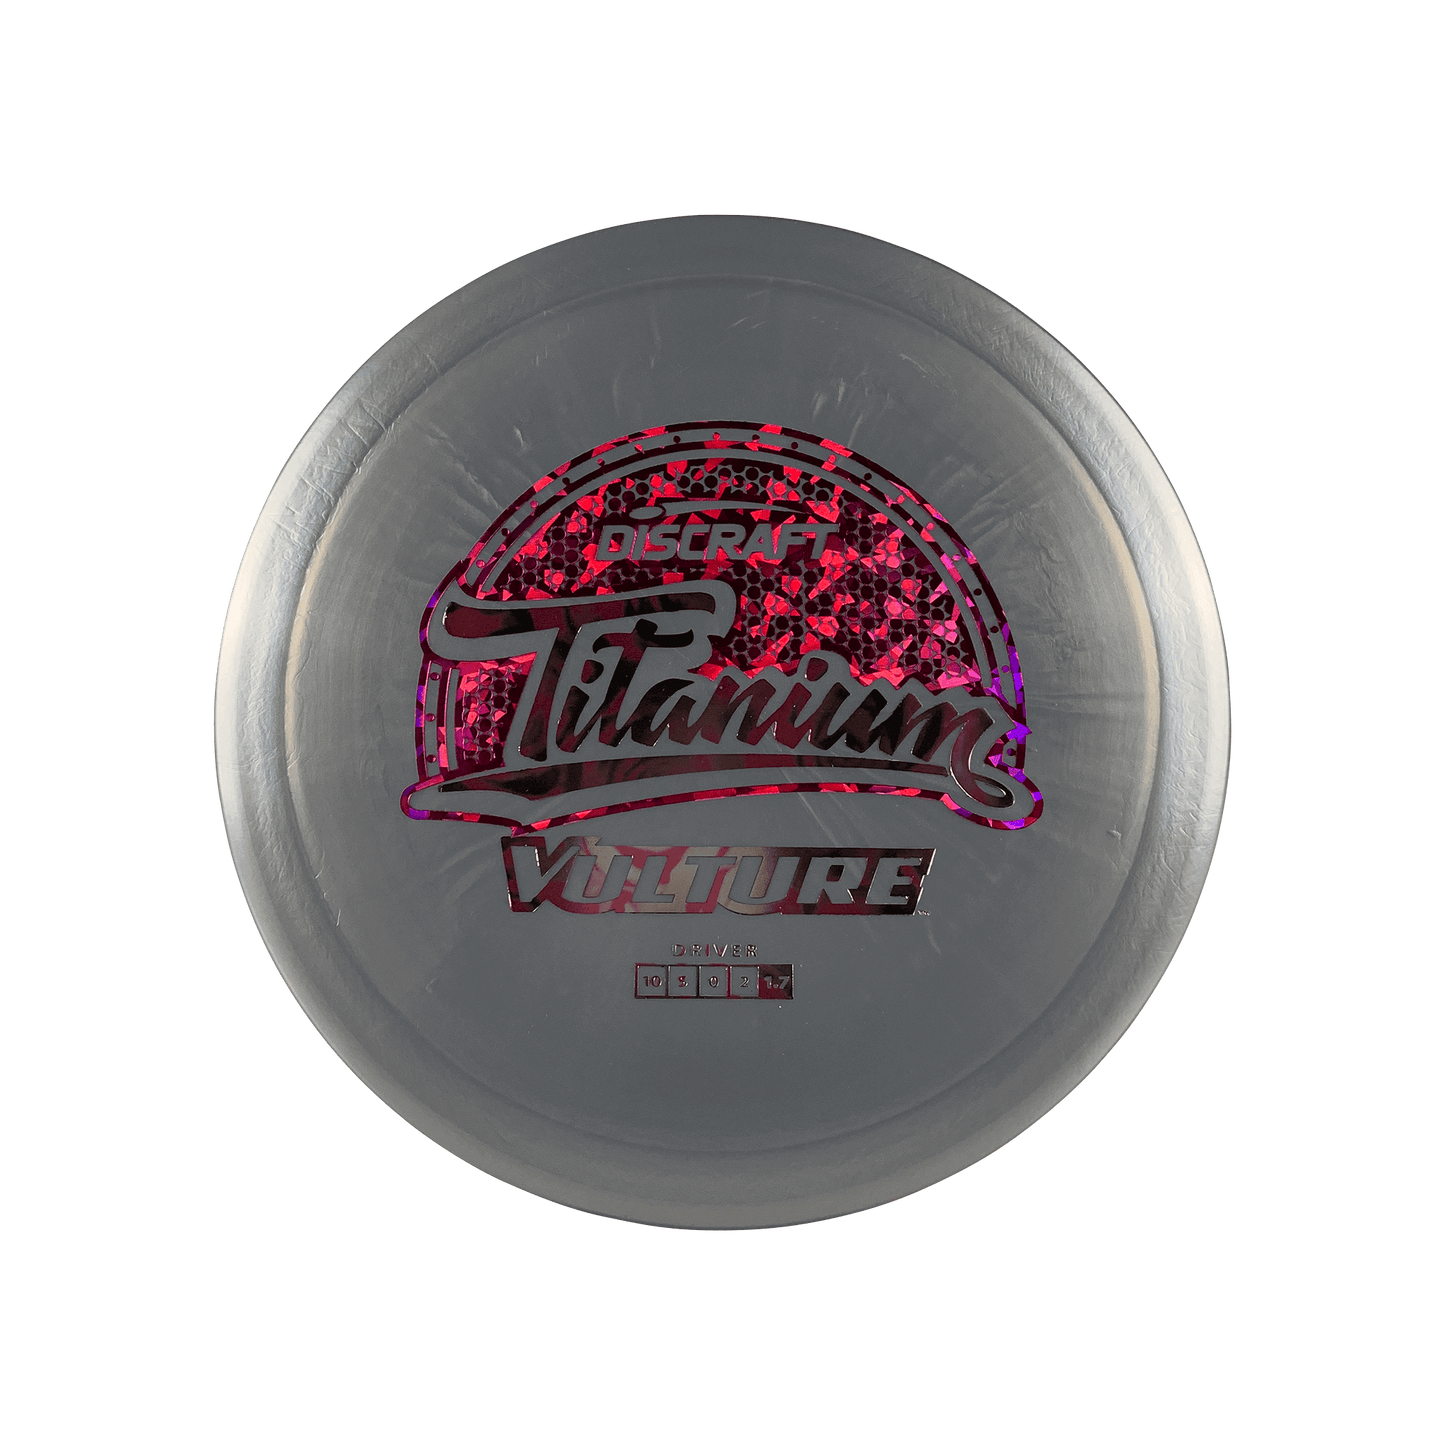 Titanium Vulture Disc Discraft silver 173 